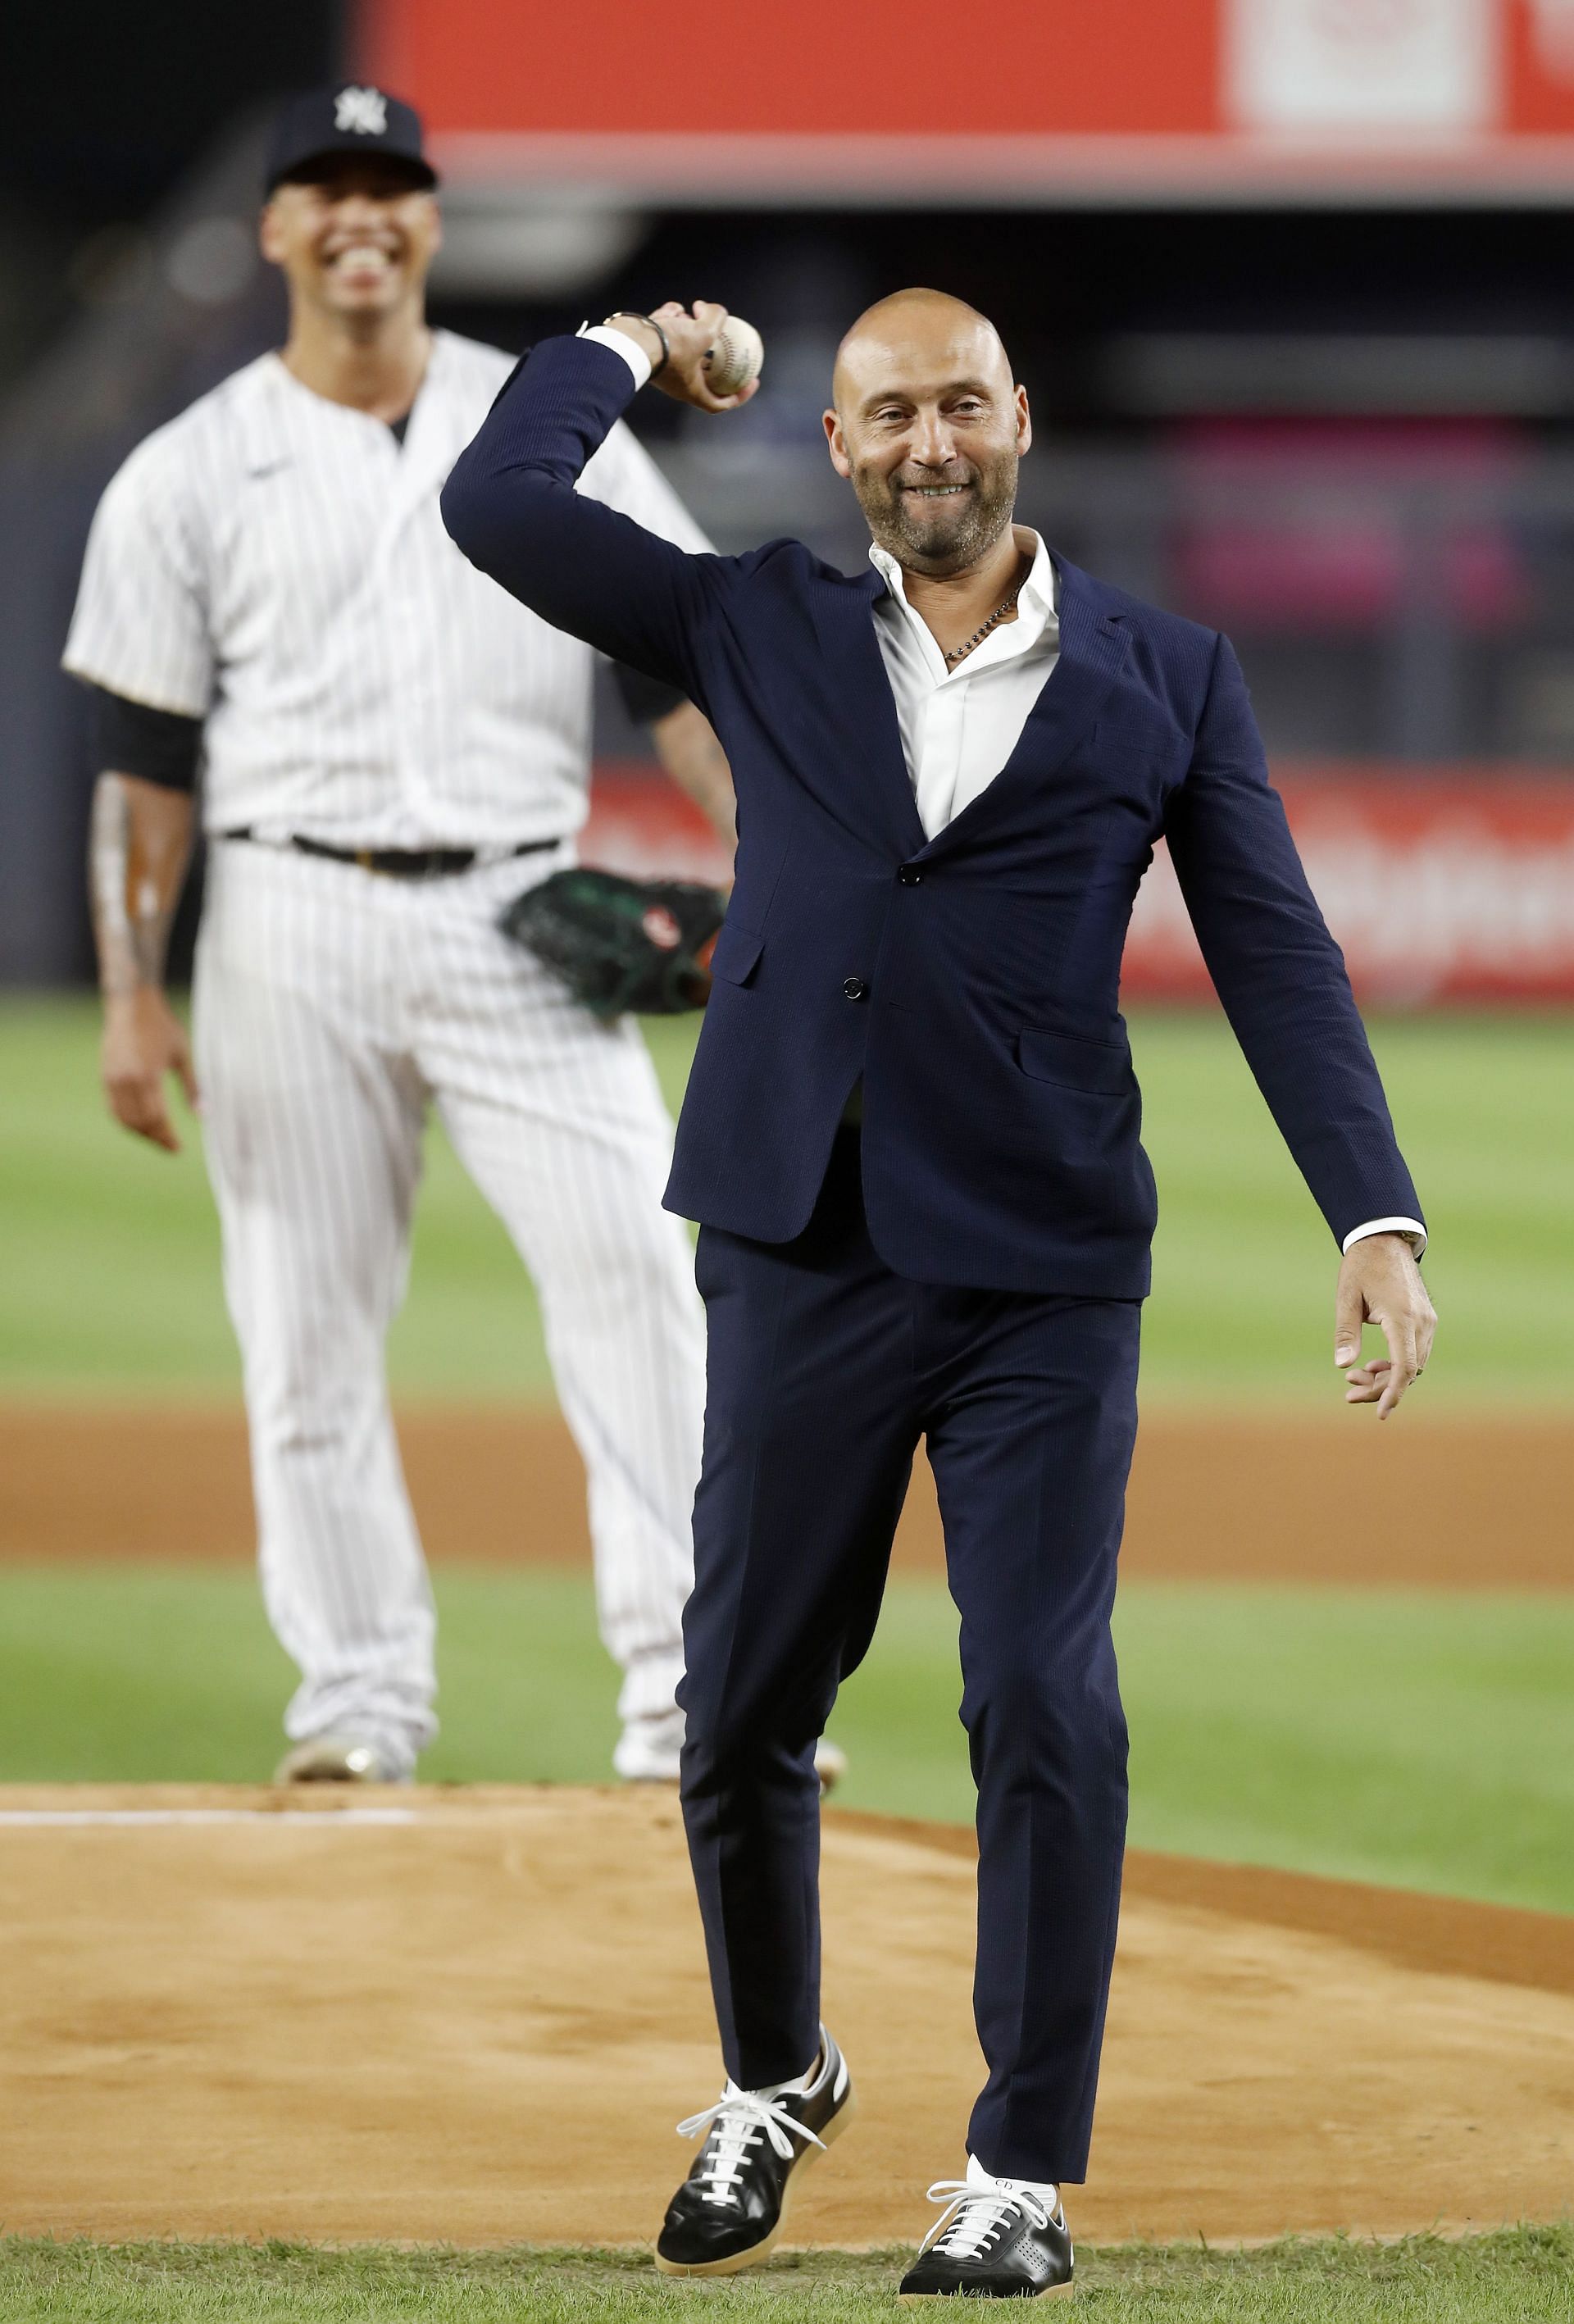 Dave Winfield 6'4 and Jeter 6'3 4 GOATS crossing - New York Yankees fan  react after Derek Jeter's heartwarming reunion with baseball legends